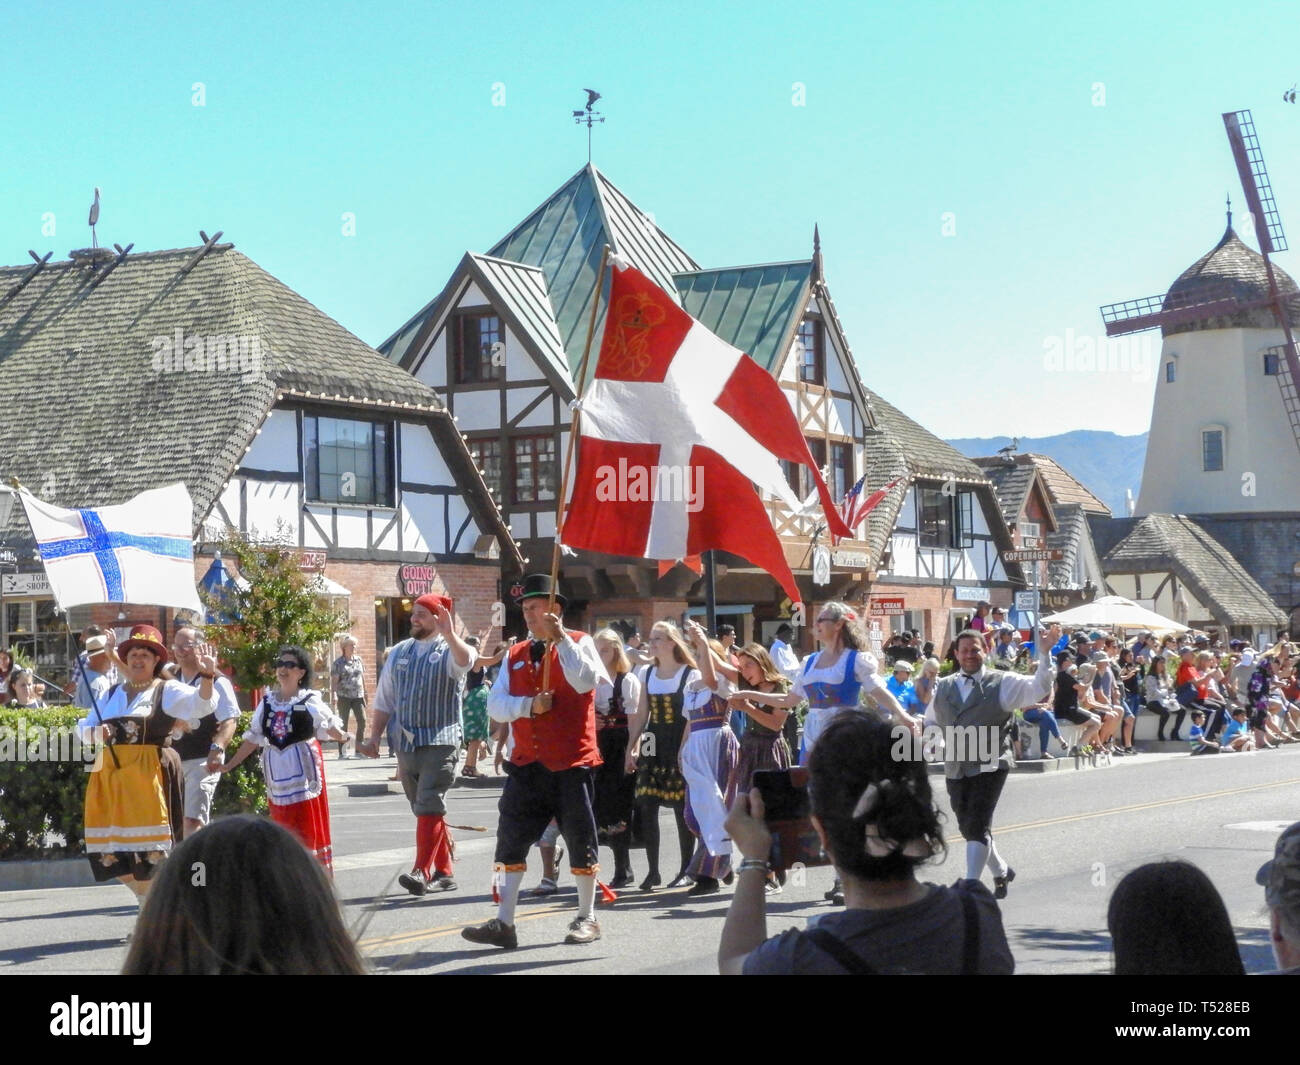 Dänische Tage Parade, mit Leuten in der dänischen Kostüme interessieren die dänische Flagge die Stadt Straße gekleidet. Touristen und Zuschauer. Stockfoto